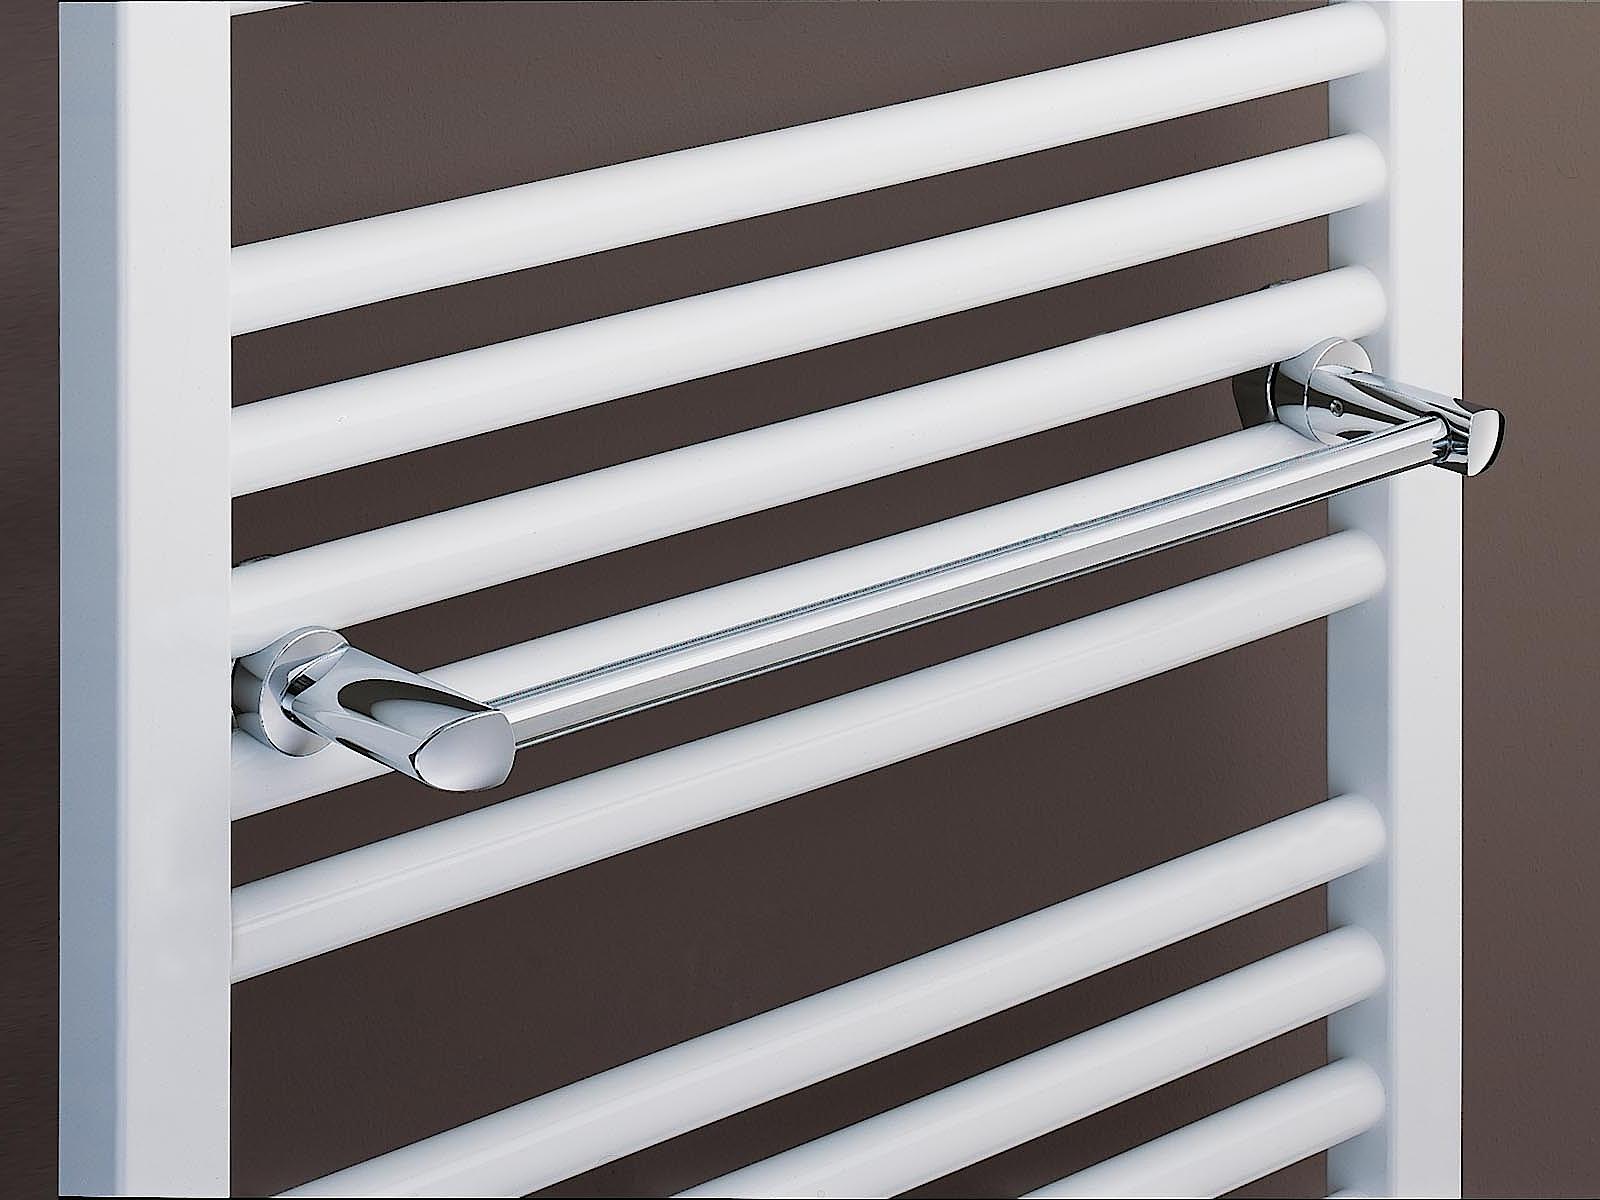 Radiateur design et de salle de bain Basic-50 de Kermi, barre porte-serviettes droite.